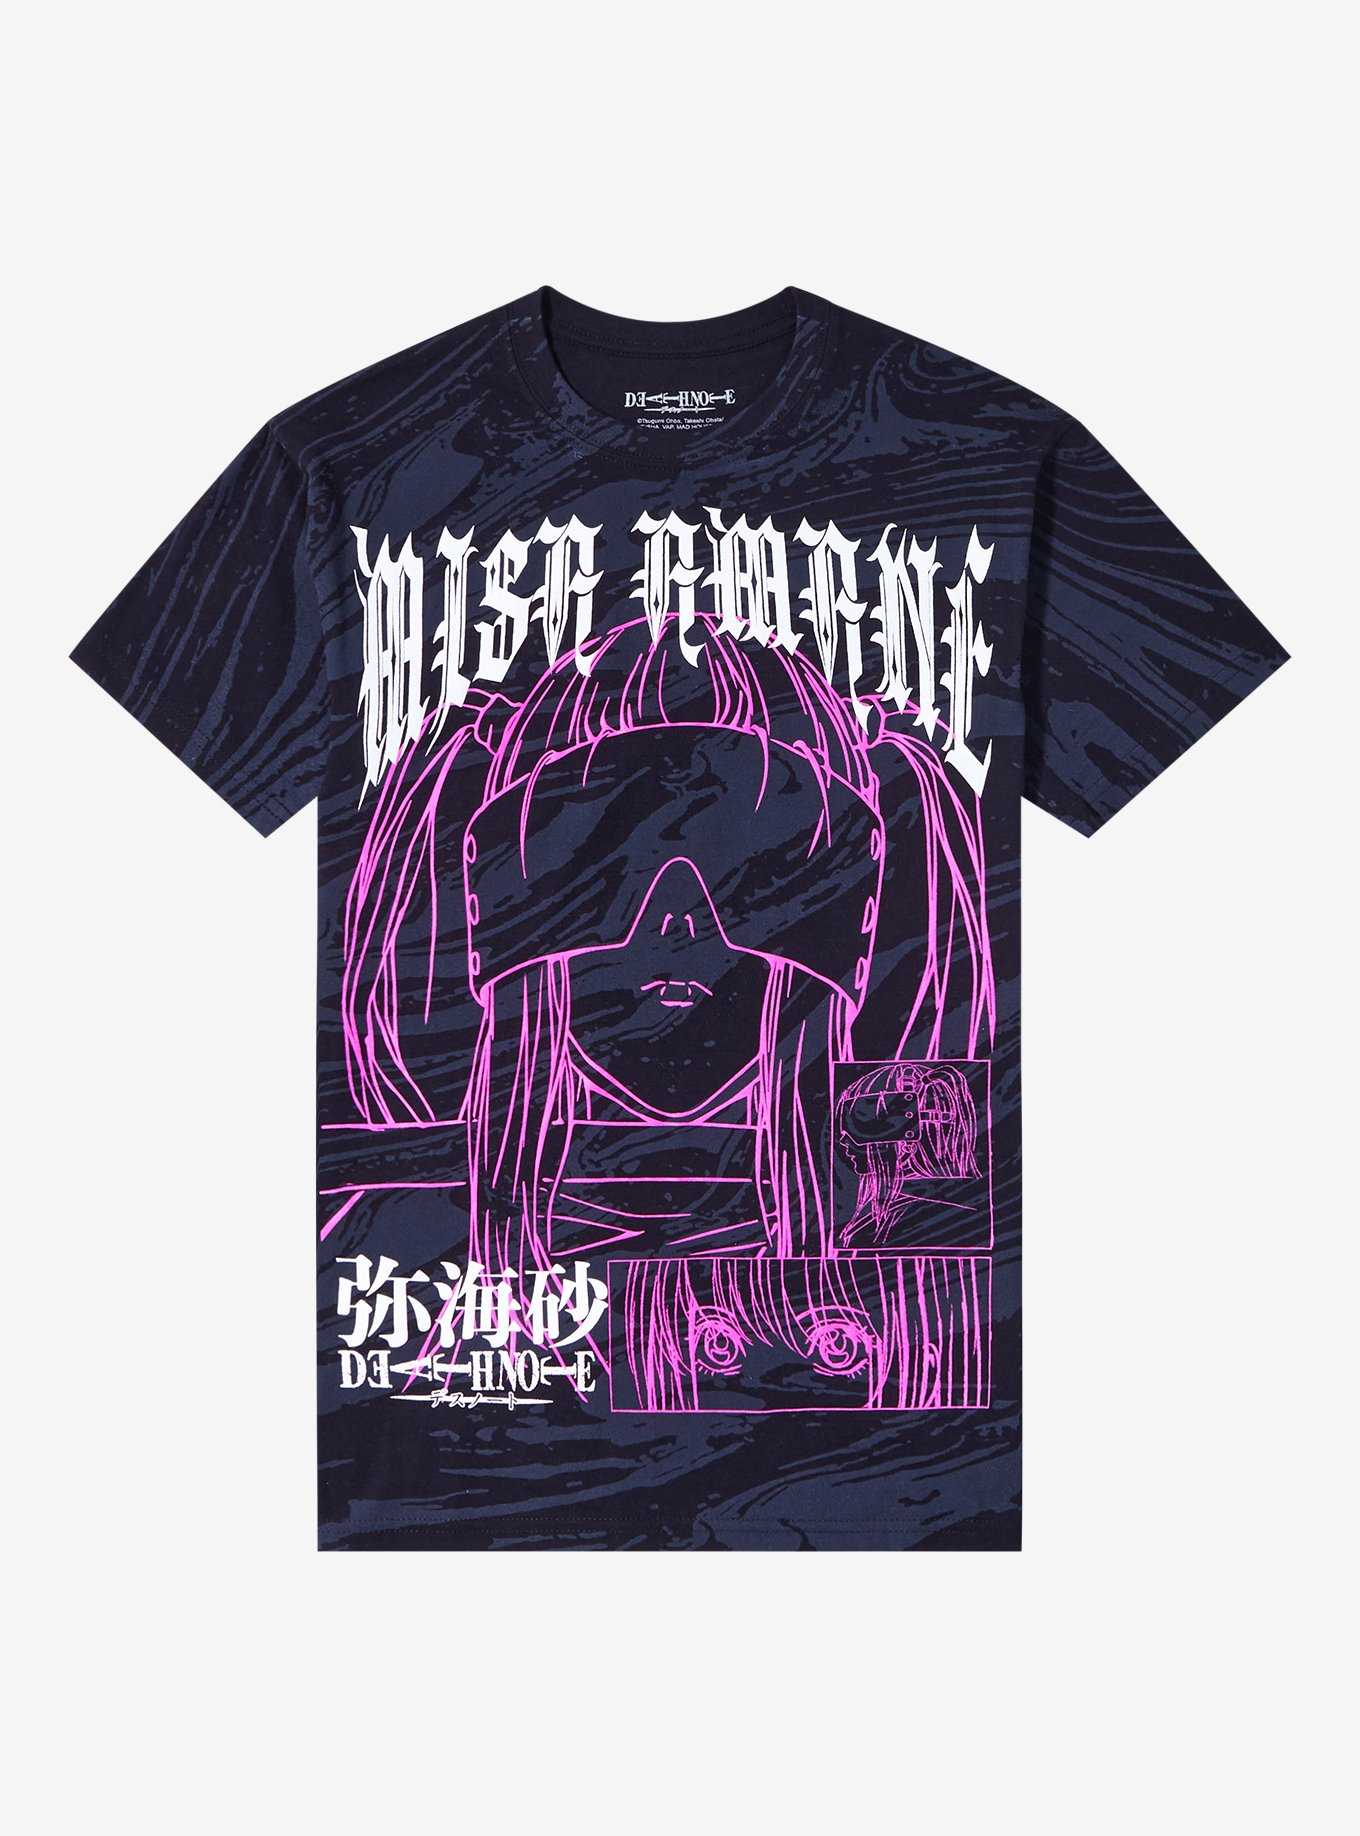 Death Note Misa Swirl Wash Boyfriend Fit Girls T-Shirt, , hi-res